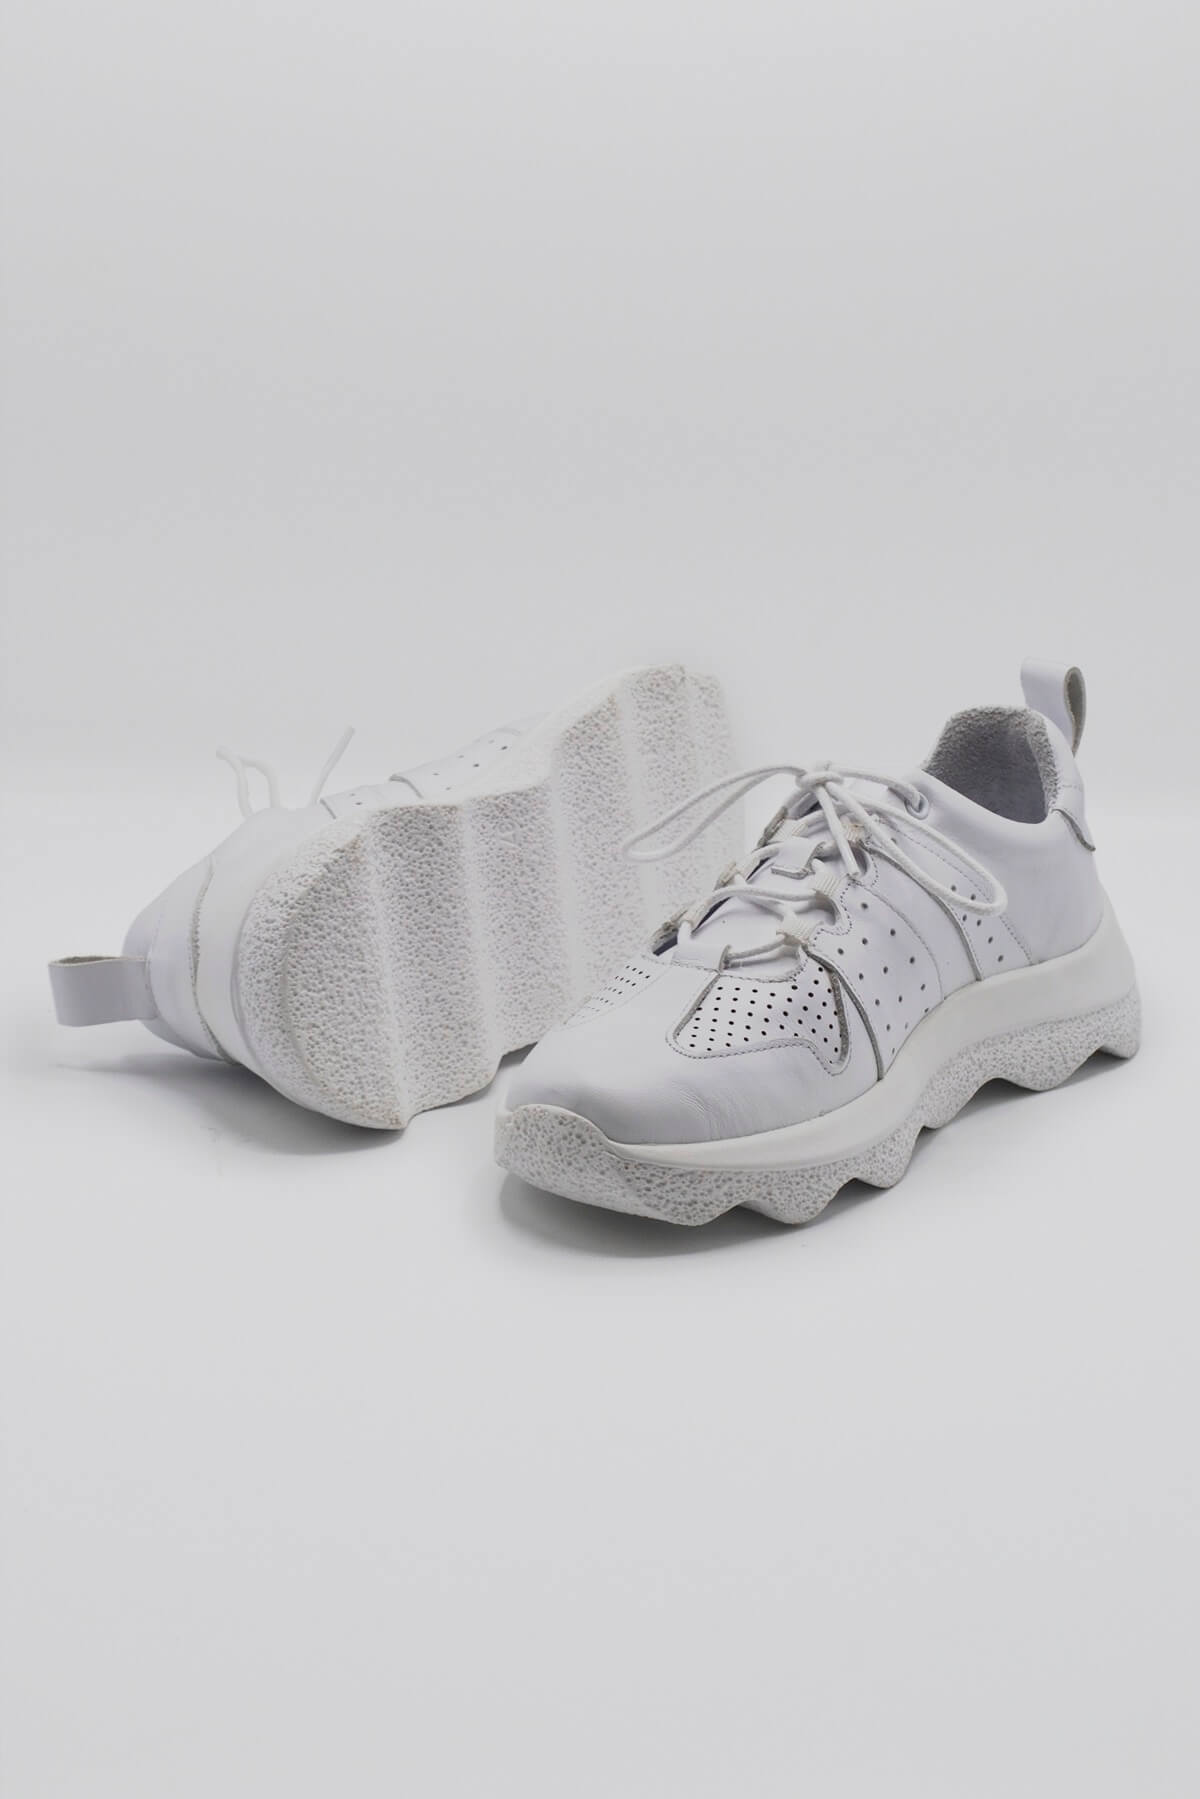 Kadın Deri Sneakers Ayakkabı Beyaz 2314001Y - Thumbnail